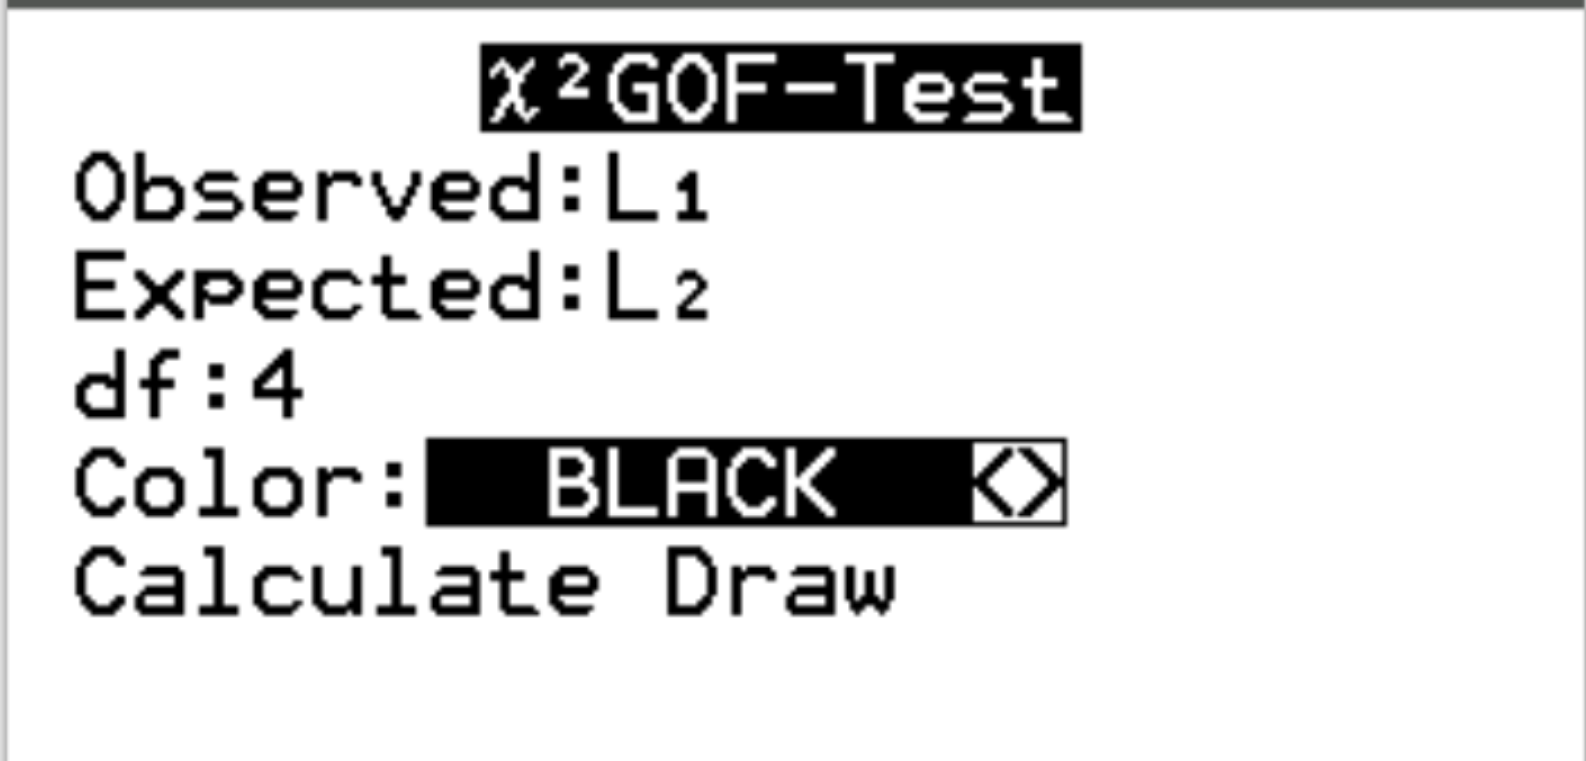 Teste de ajuste qui-quadrado em uma calculadora TI-84